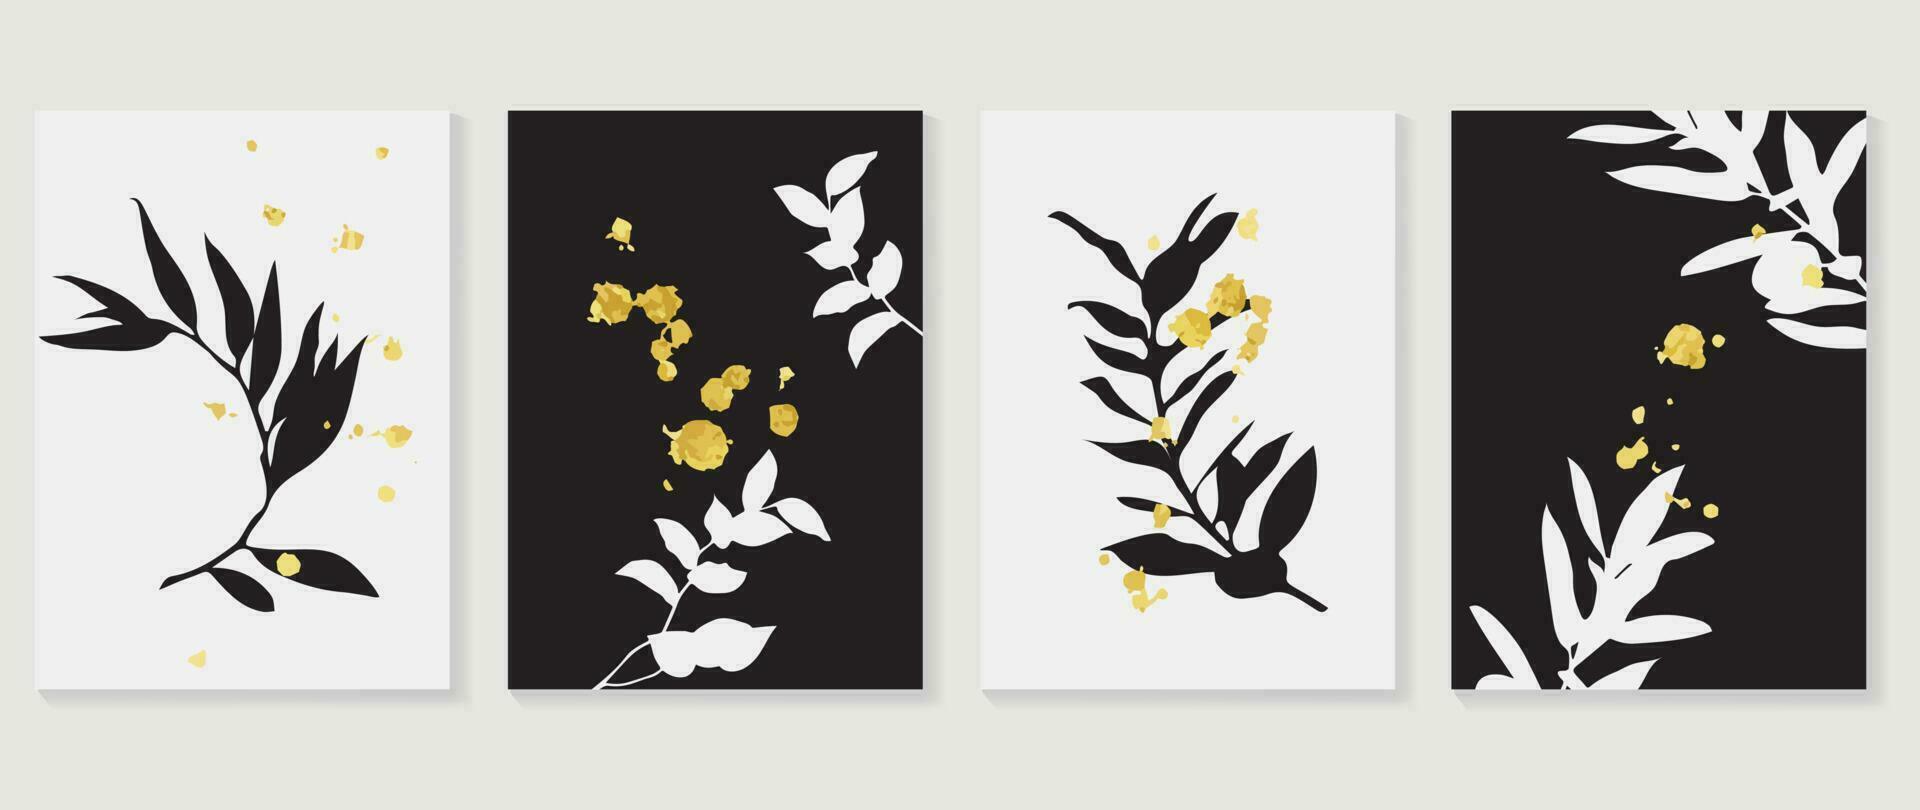 abstrakt botanisk bakgrund vektor. uppsättning av svart och vit blad grenar, lövverk, växter, guld textur. svartvit illustration design för vägg dekoration, vägg konst, omslag, vykort, broschyr. vektor